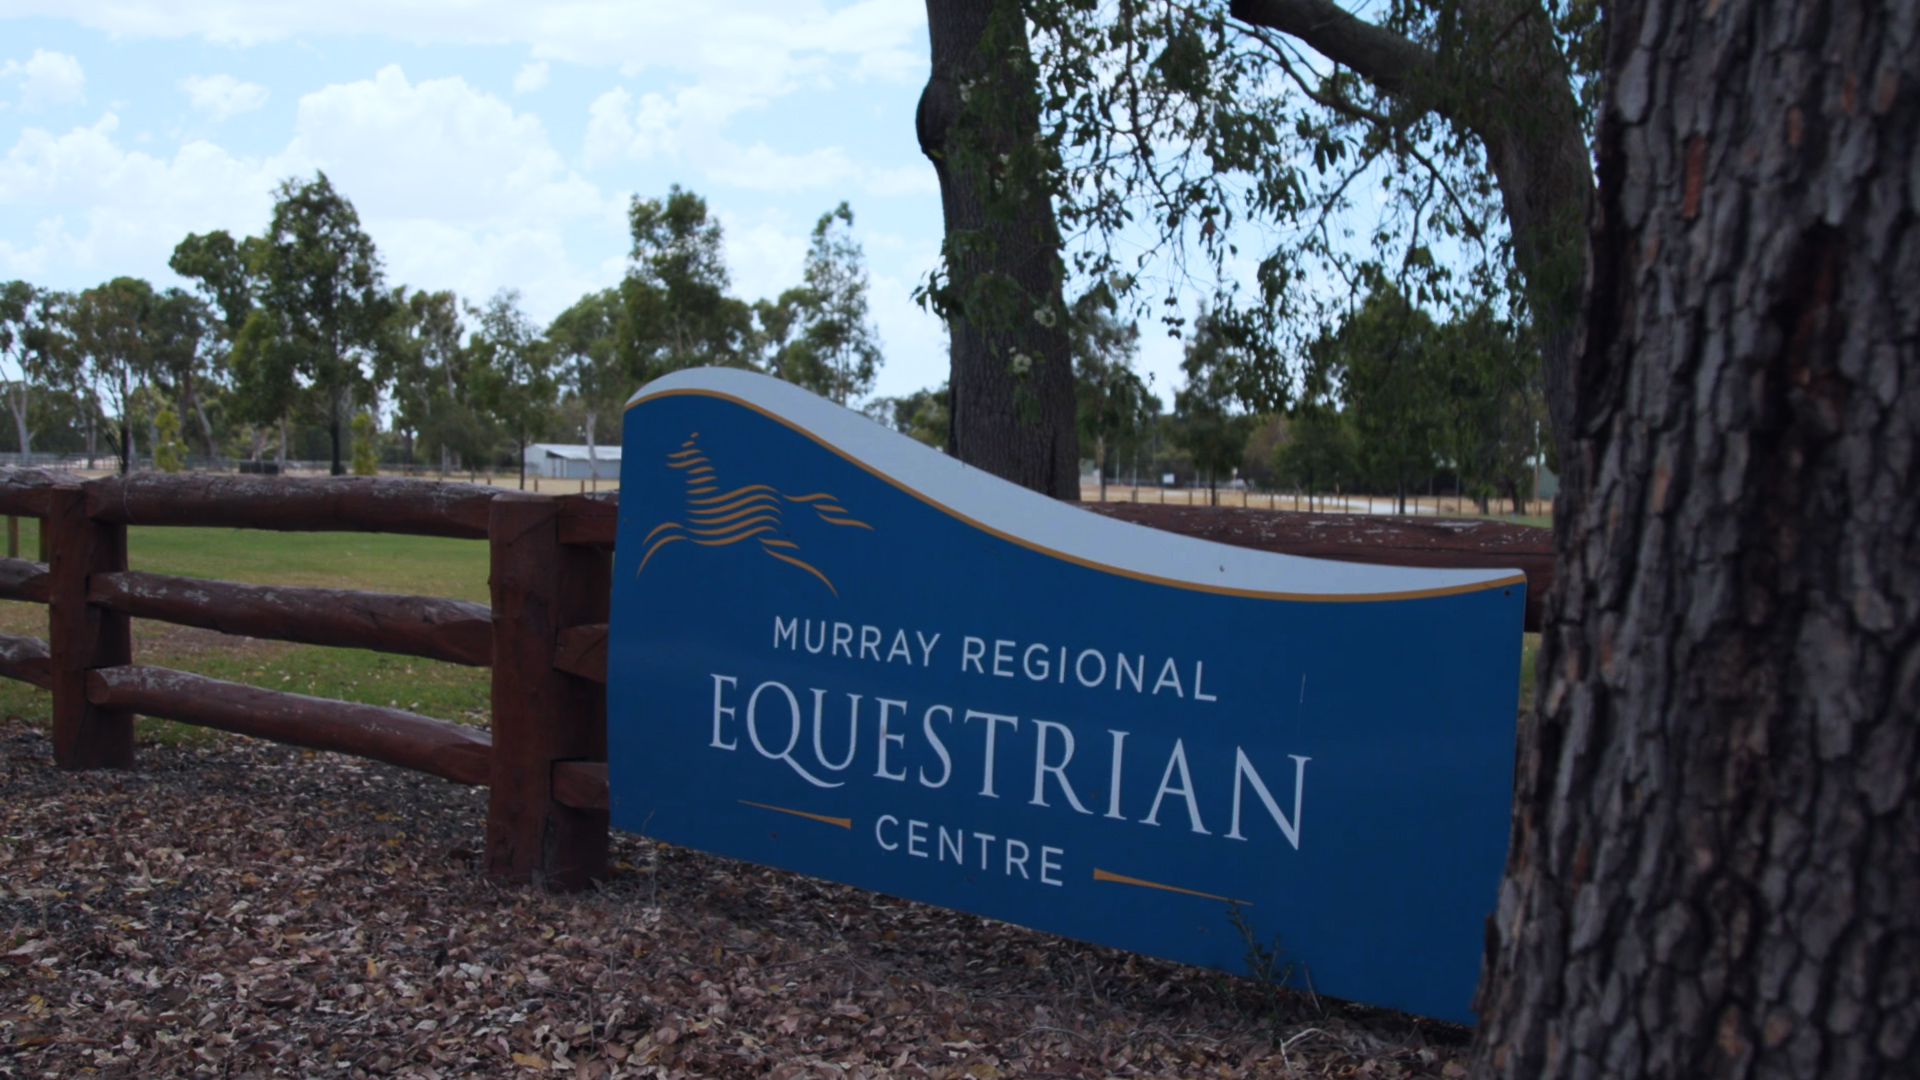 Murray Regional Equestrian Centre